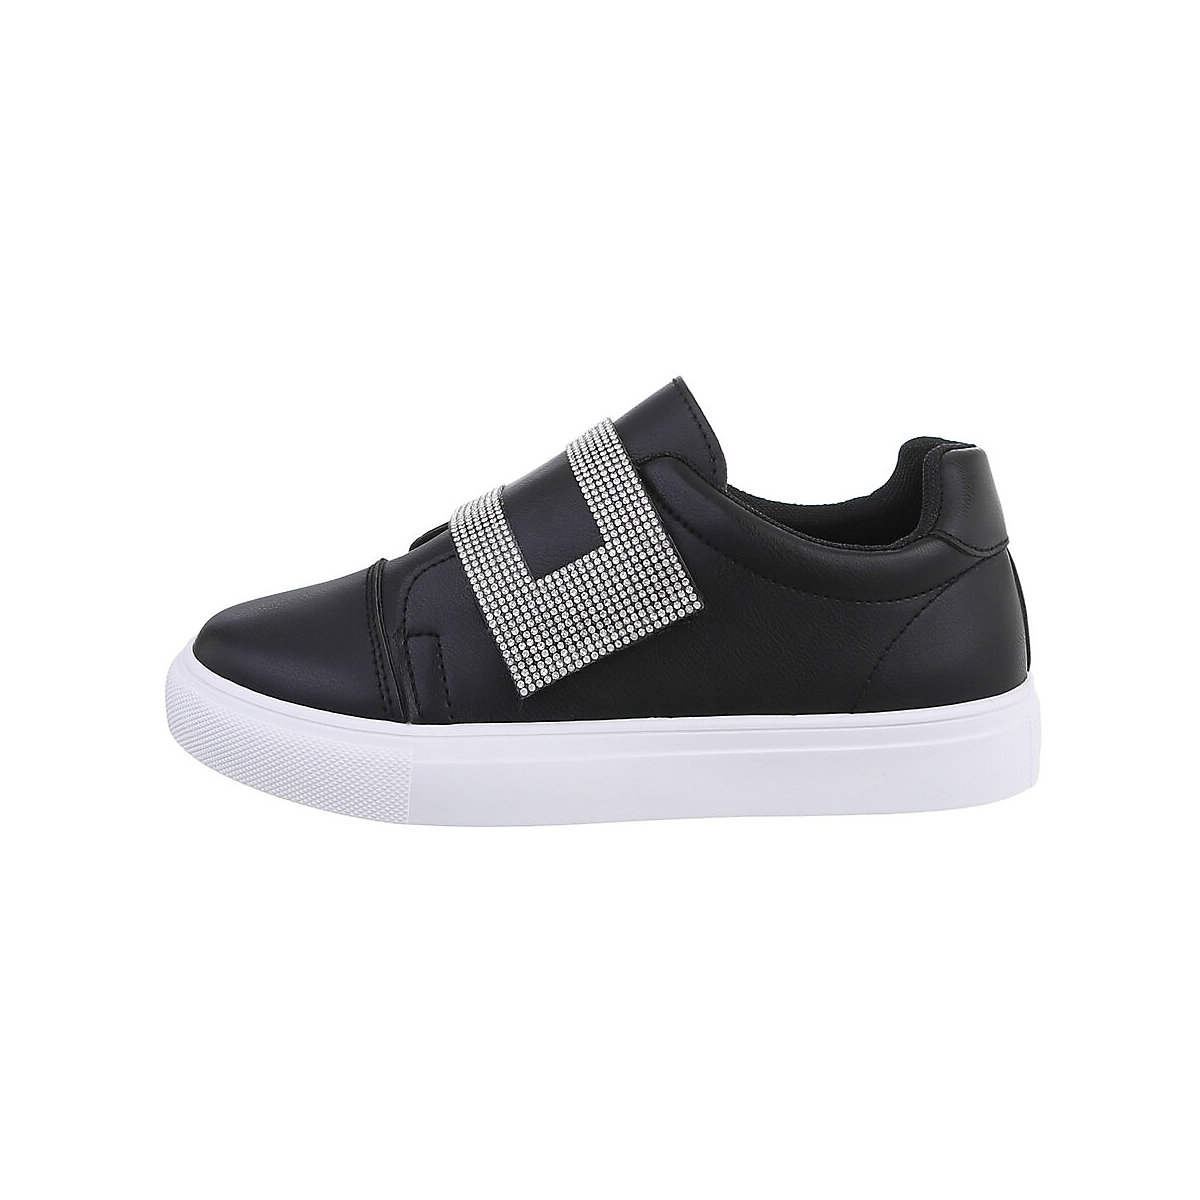 Ital-Design Sneakers Low Klettverschluss Flach Strass schwarz/weiß